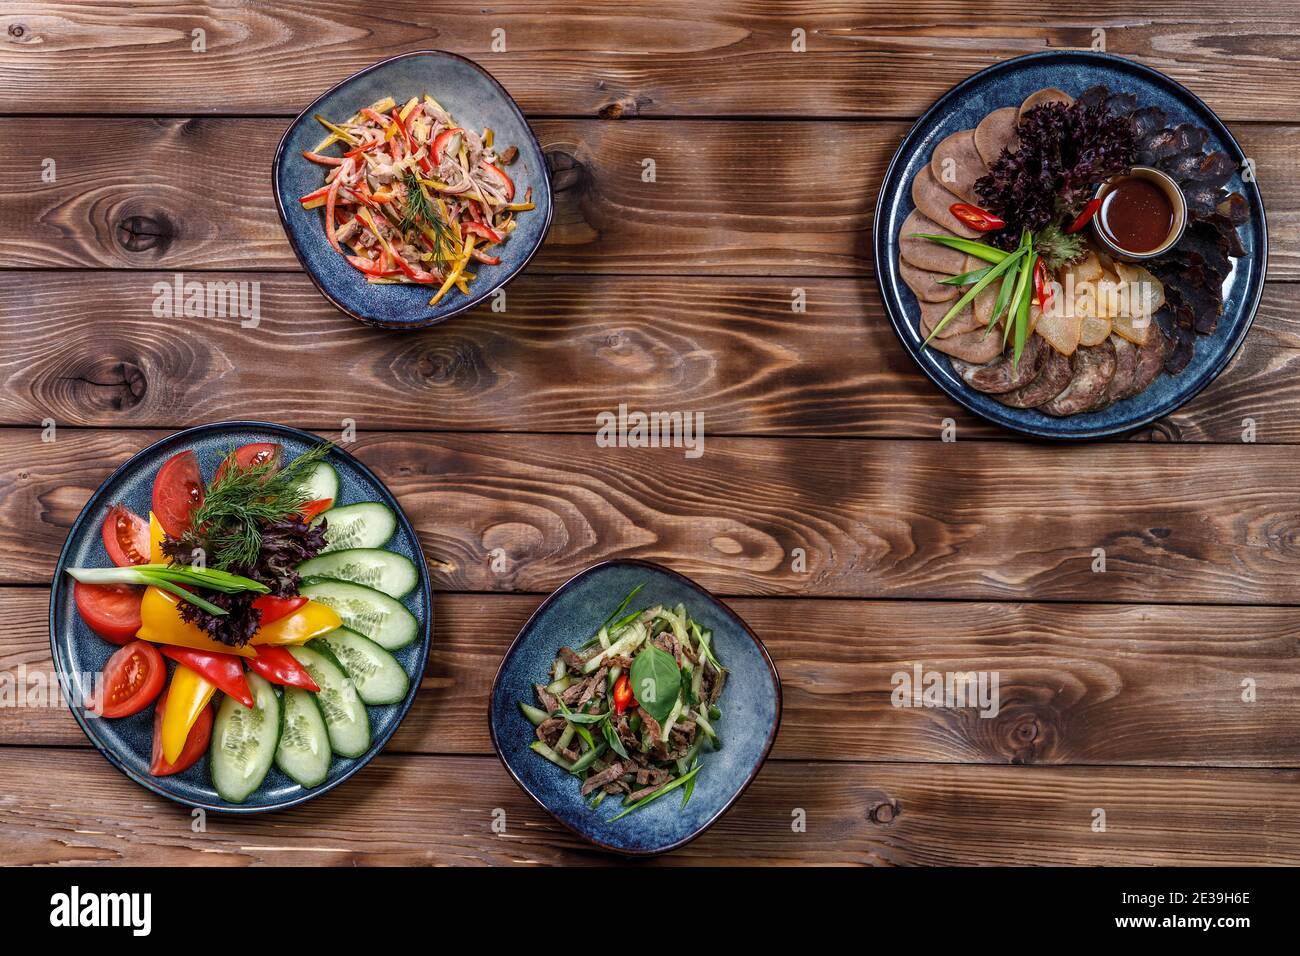 Flaches Layout verschiedener Gerichte mit geschnittenem Gemüse, Fleischstücken, Salaten auf braunem Holzhintergrund. Speicherplatz kopieren. Stockfoto